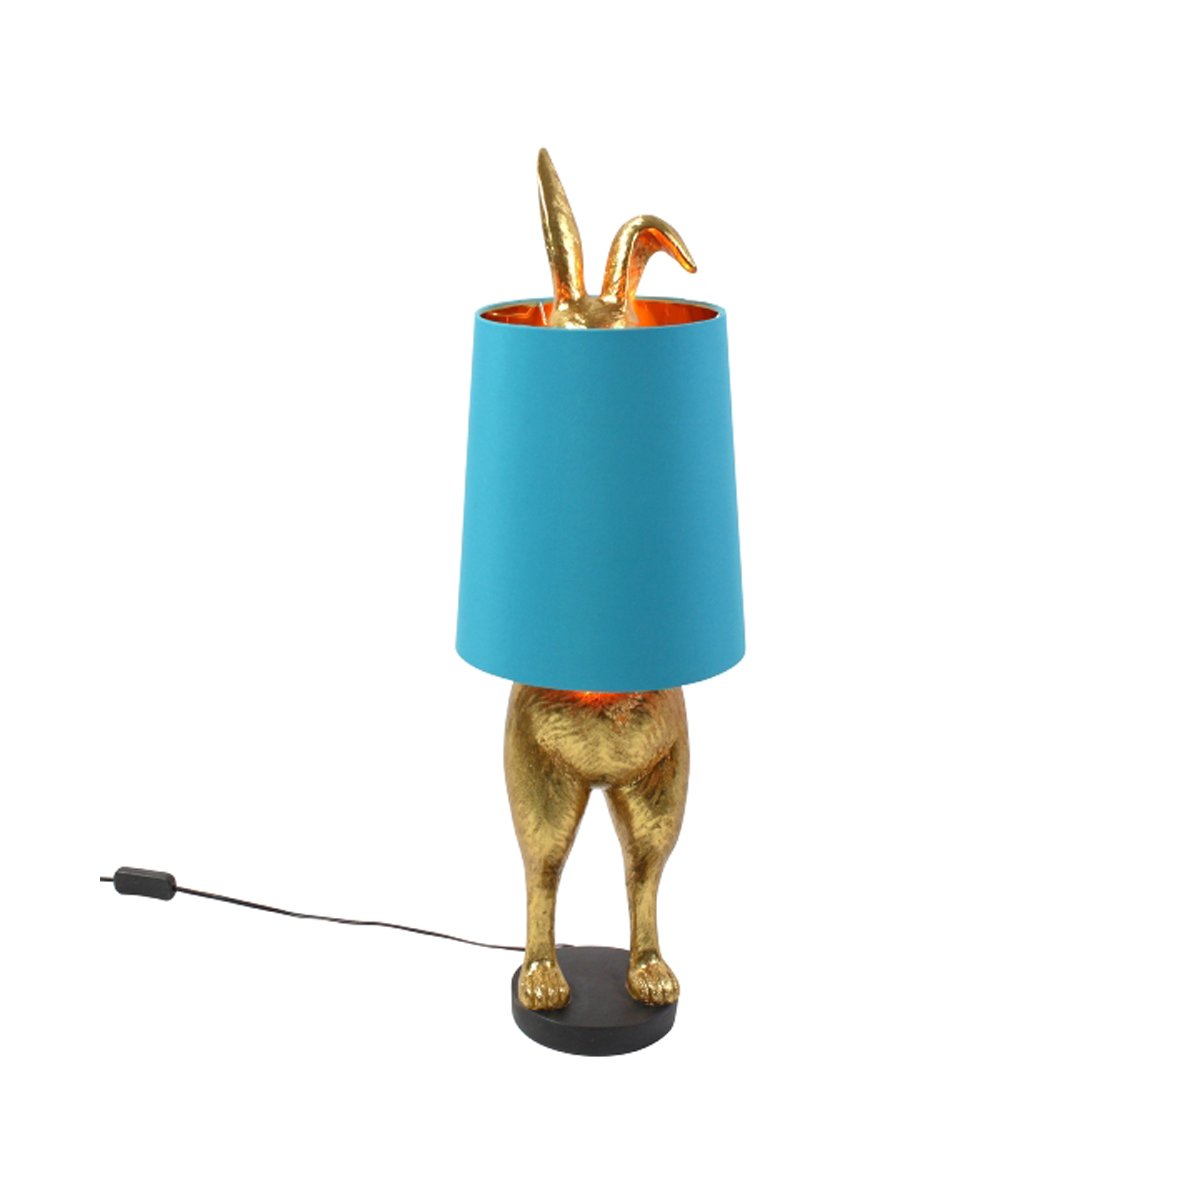 Hase Rabbit selten Tischlampe Lampe Leuchte Tischleuchte ausgefallen Geschenk 